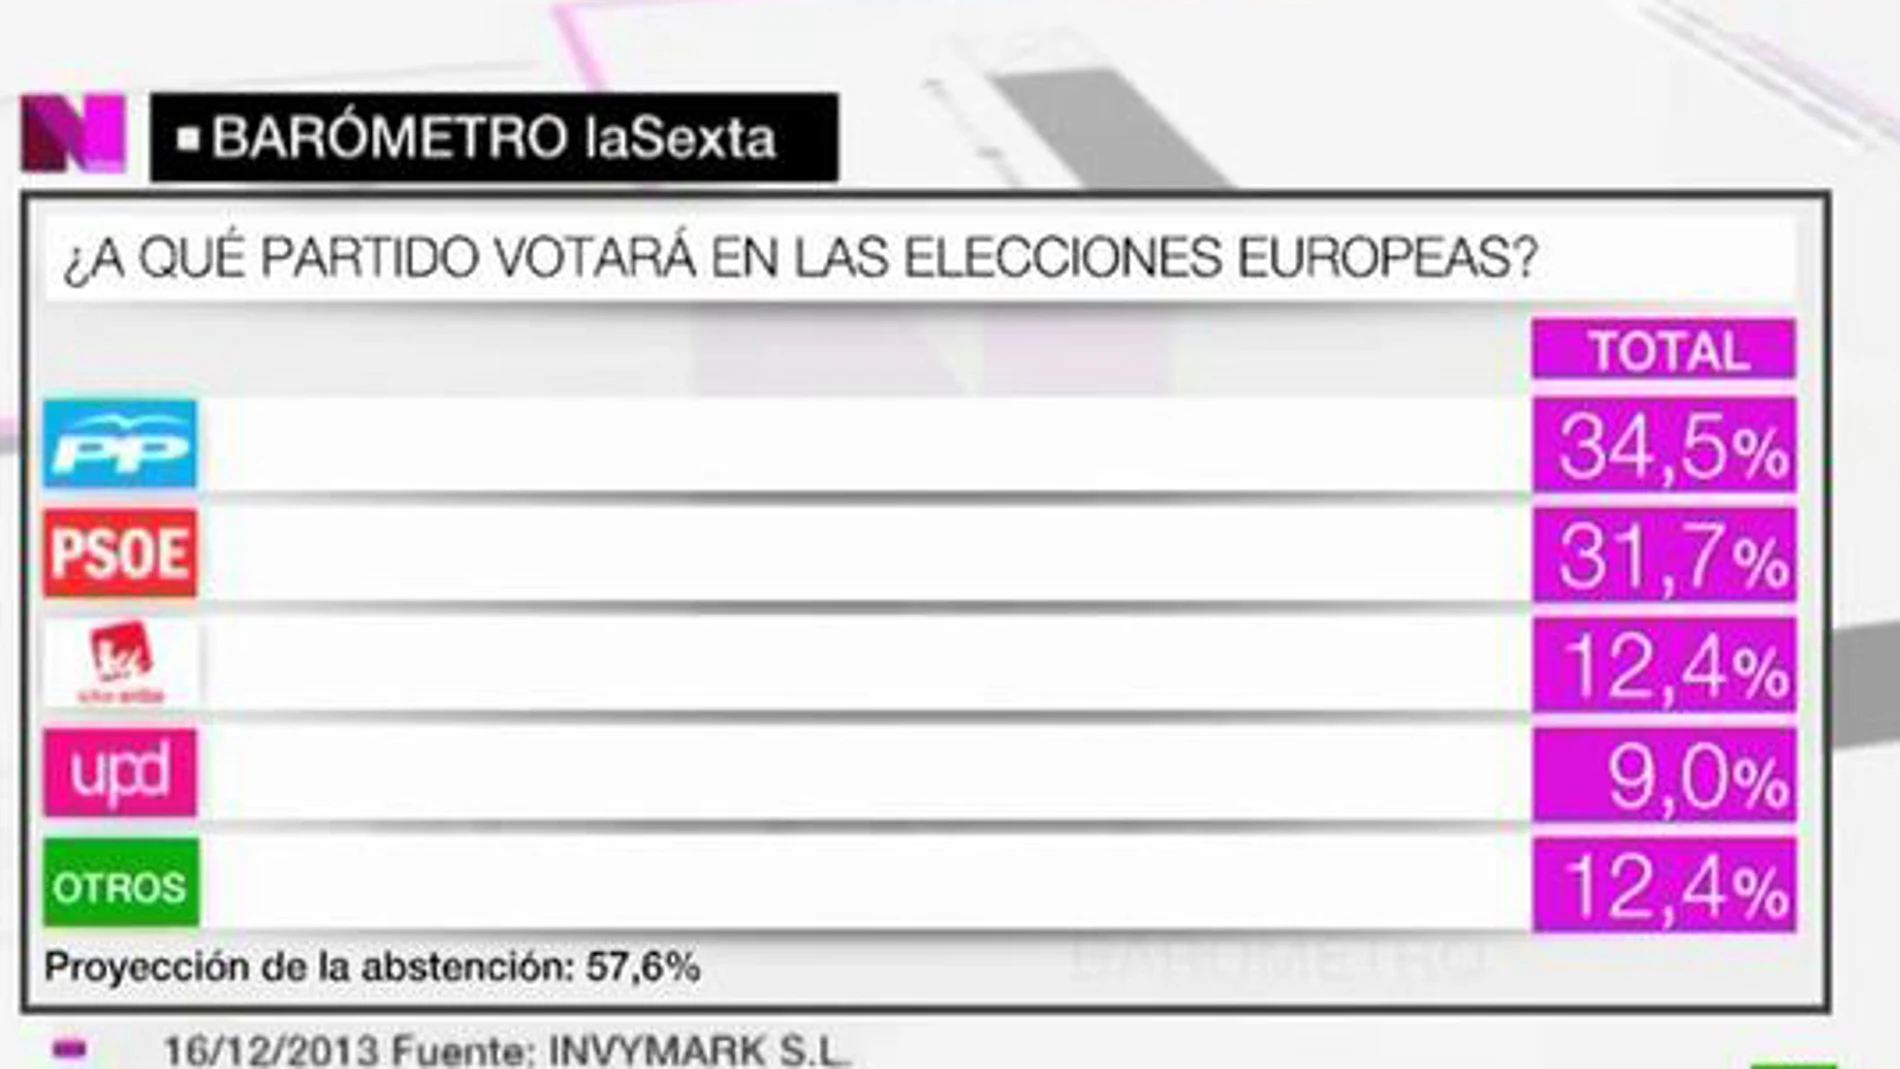 El PP ganaría las elecciones europeas según el barómetro de laSexta